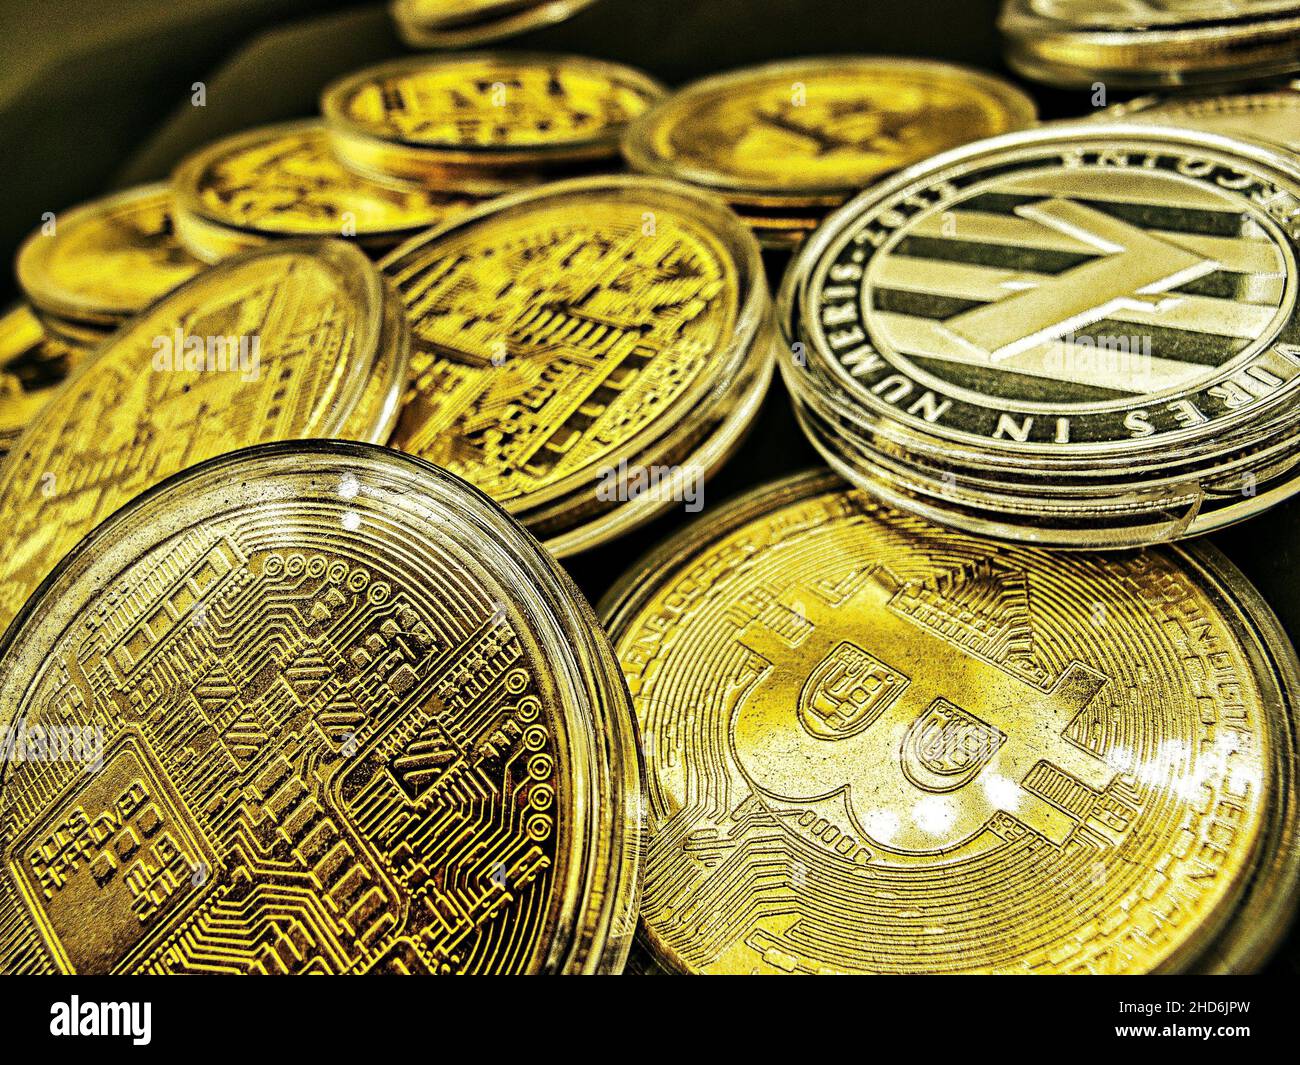 Hände voller Bitcoins. Bitcoins sind eine Kryptowährung, eine Art digitaler Währung und ein Zahlungssystem ohne Zentralbank oder alleinigen Administrator. Stockfoto